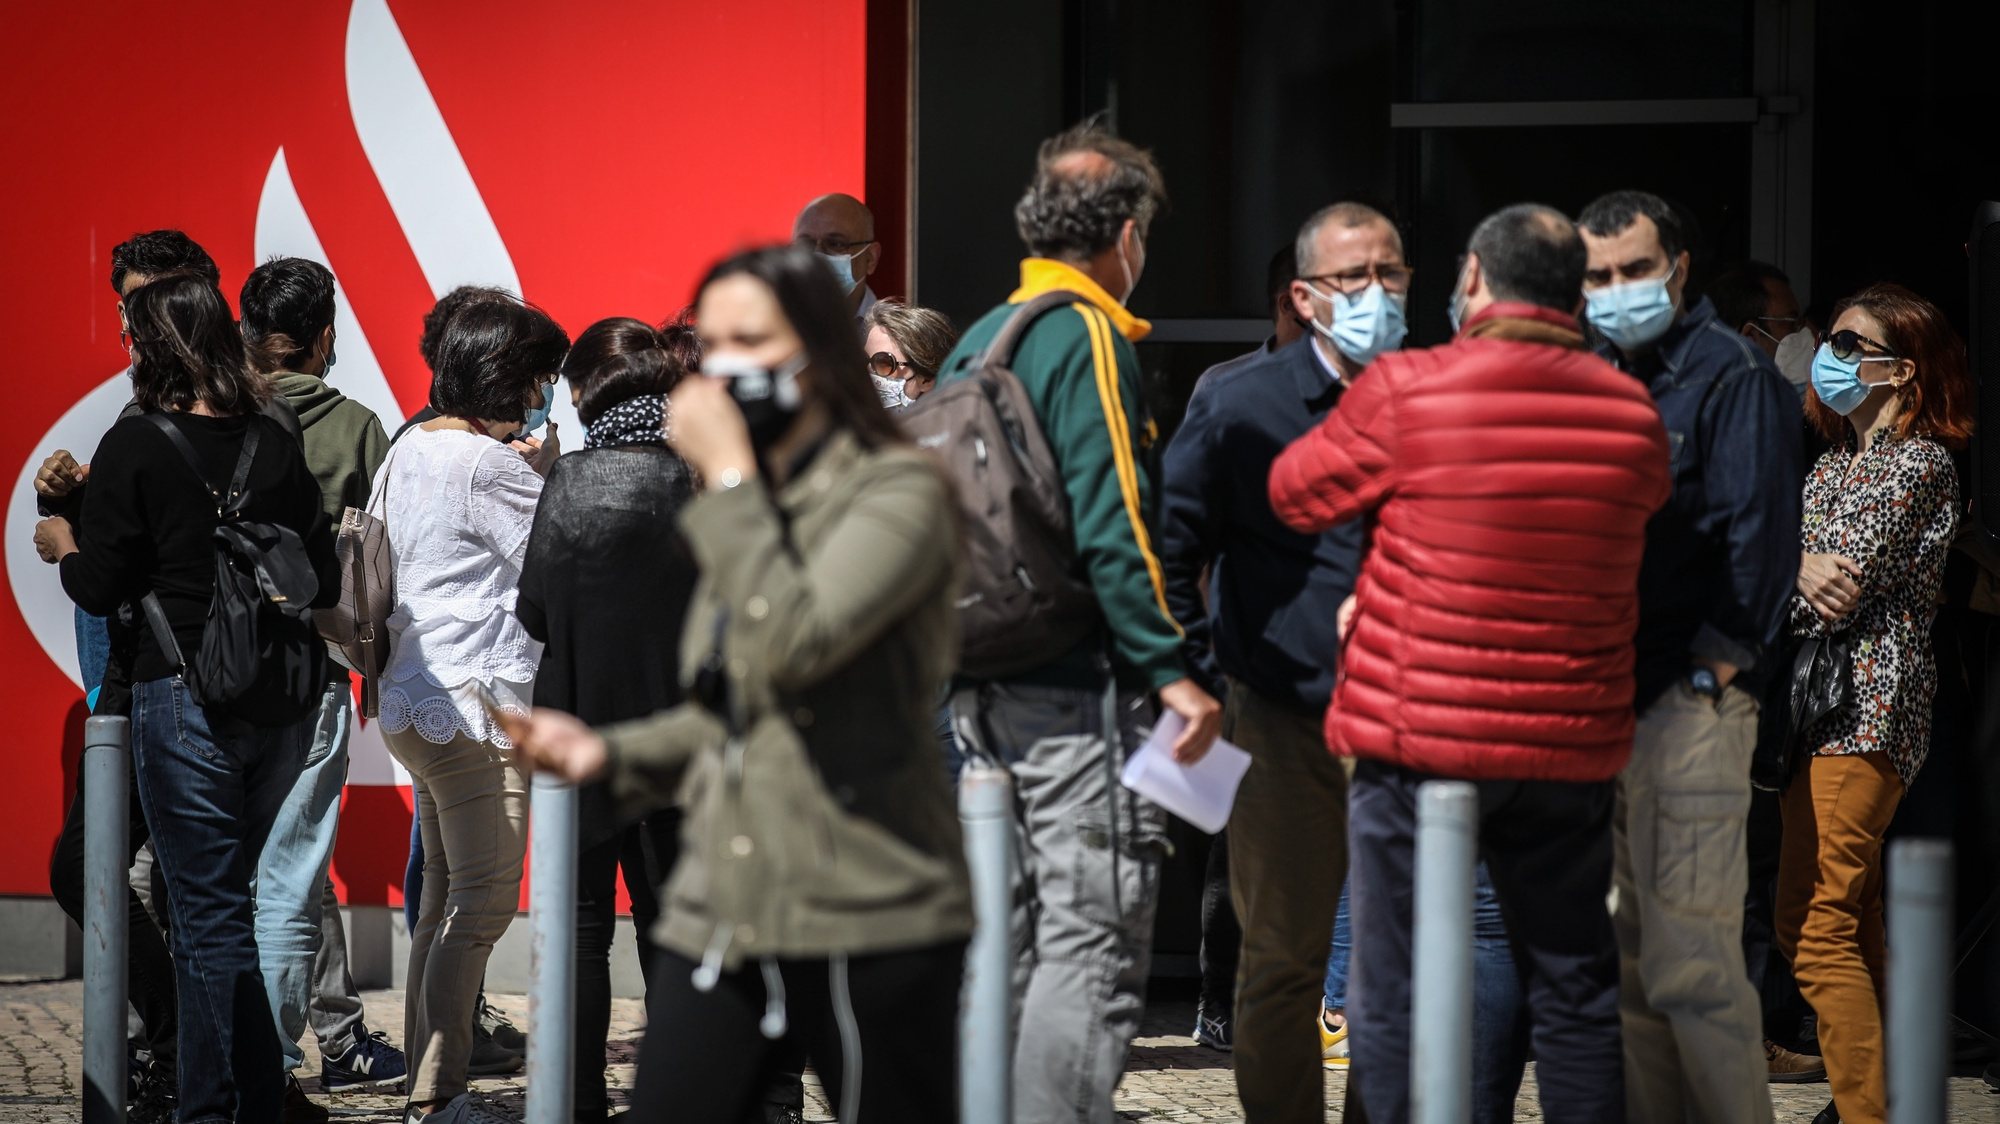 Reunião de trabalhadores do Banco Santander Totta convocada pela Comissão Nacional de Trabalhadores do Banco para debaterem a ameaça de redução de trabalhadores e que medidas tomar, em Lisboa, 06 de maio de 2021. ANDRÉ KOSTERS/LUSA